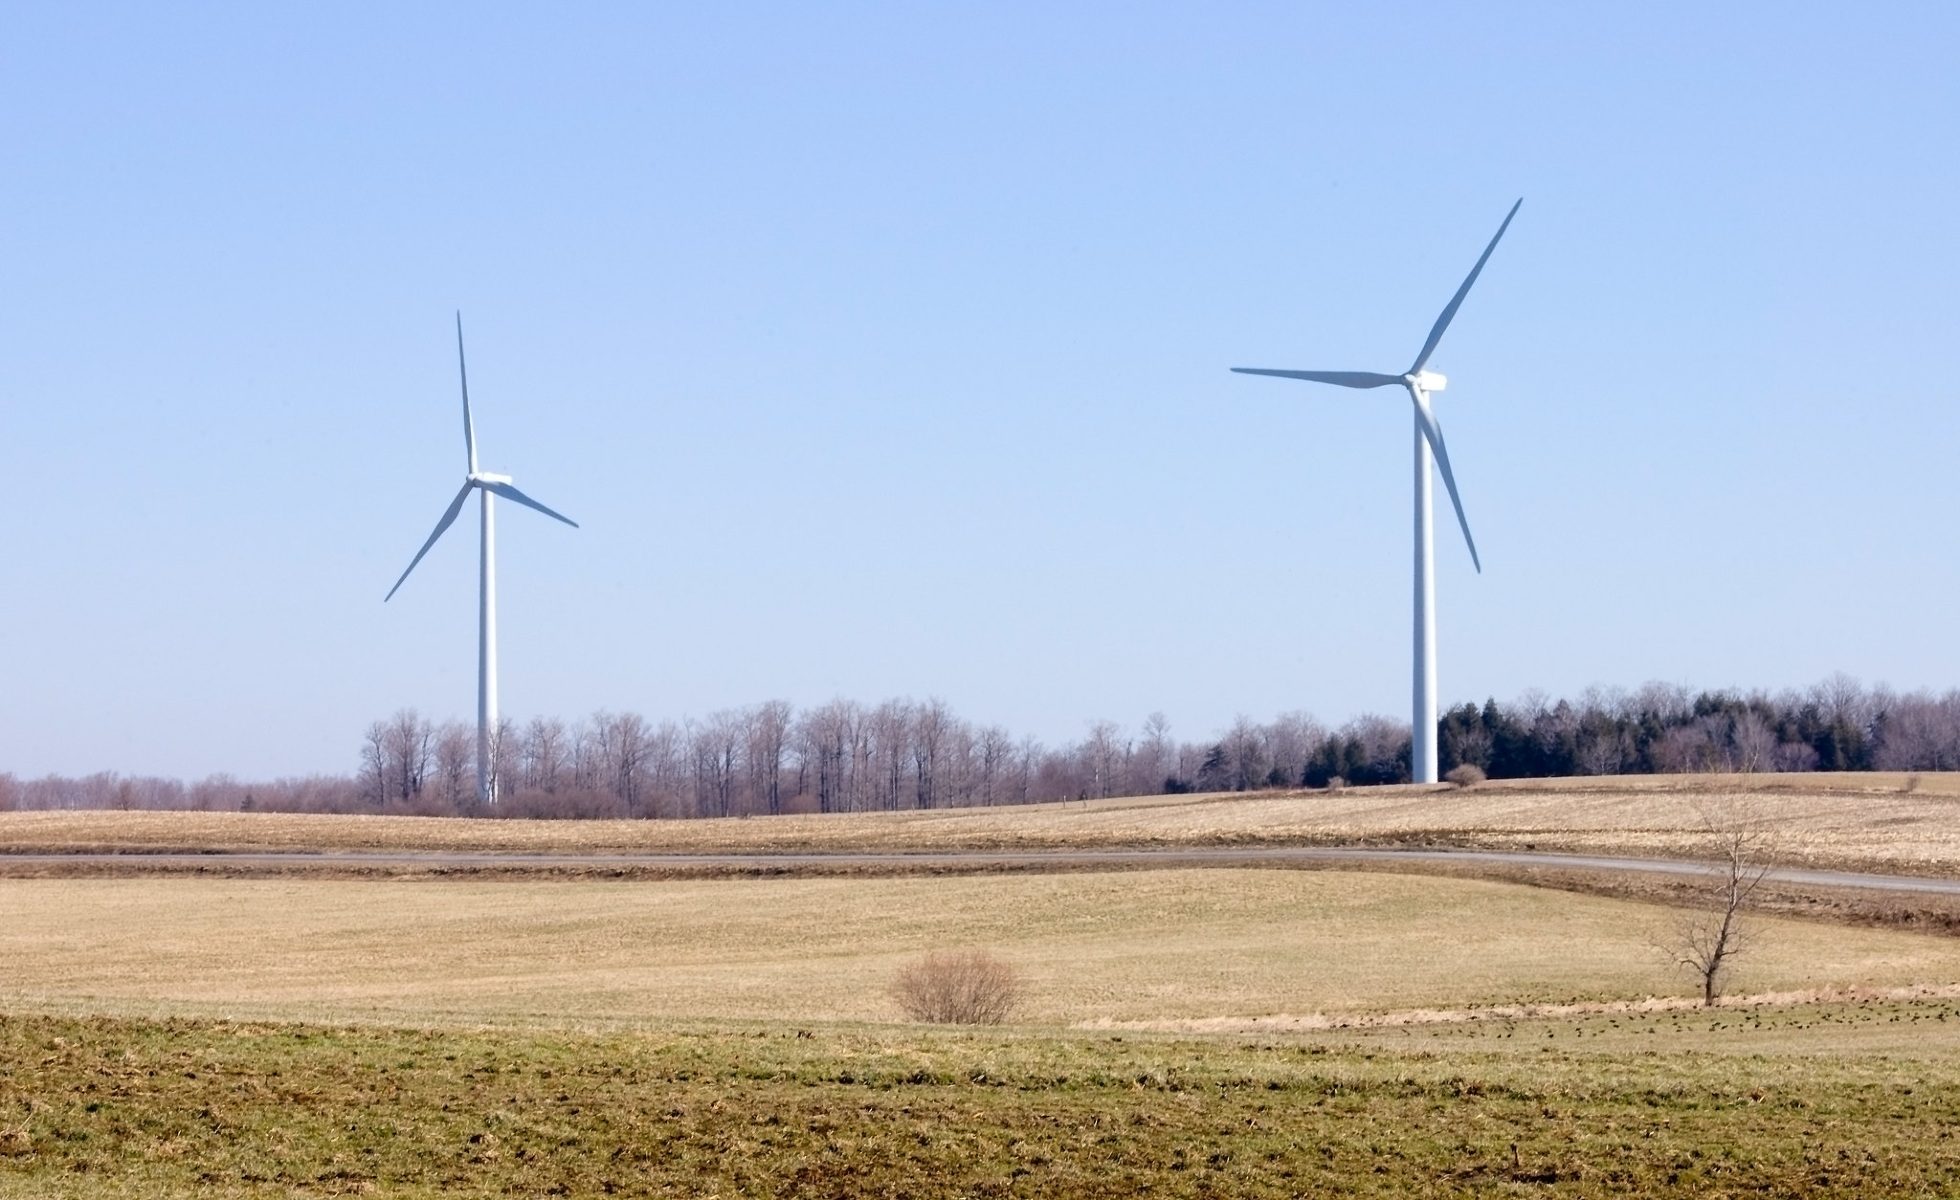 Two windmills in an open field under a blue sky